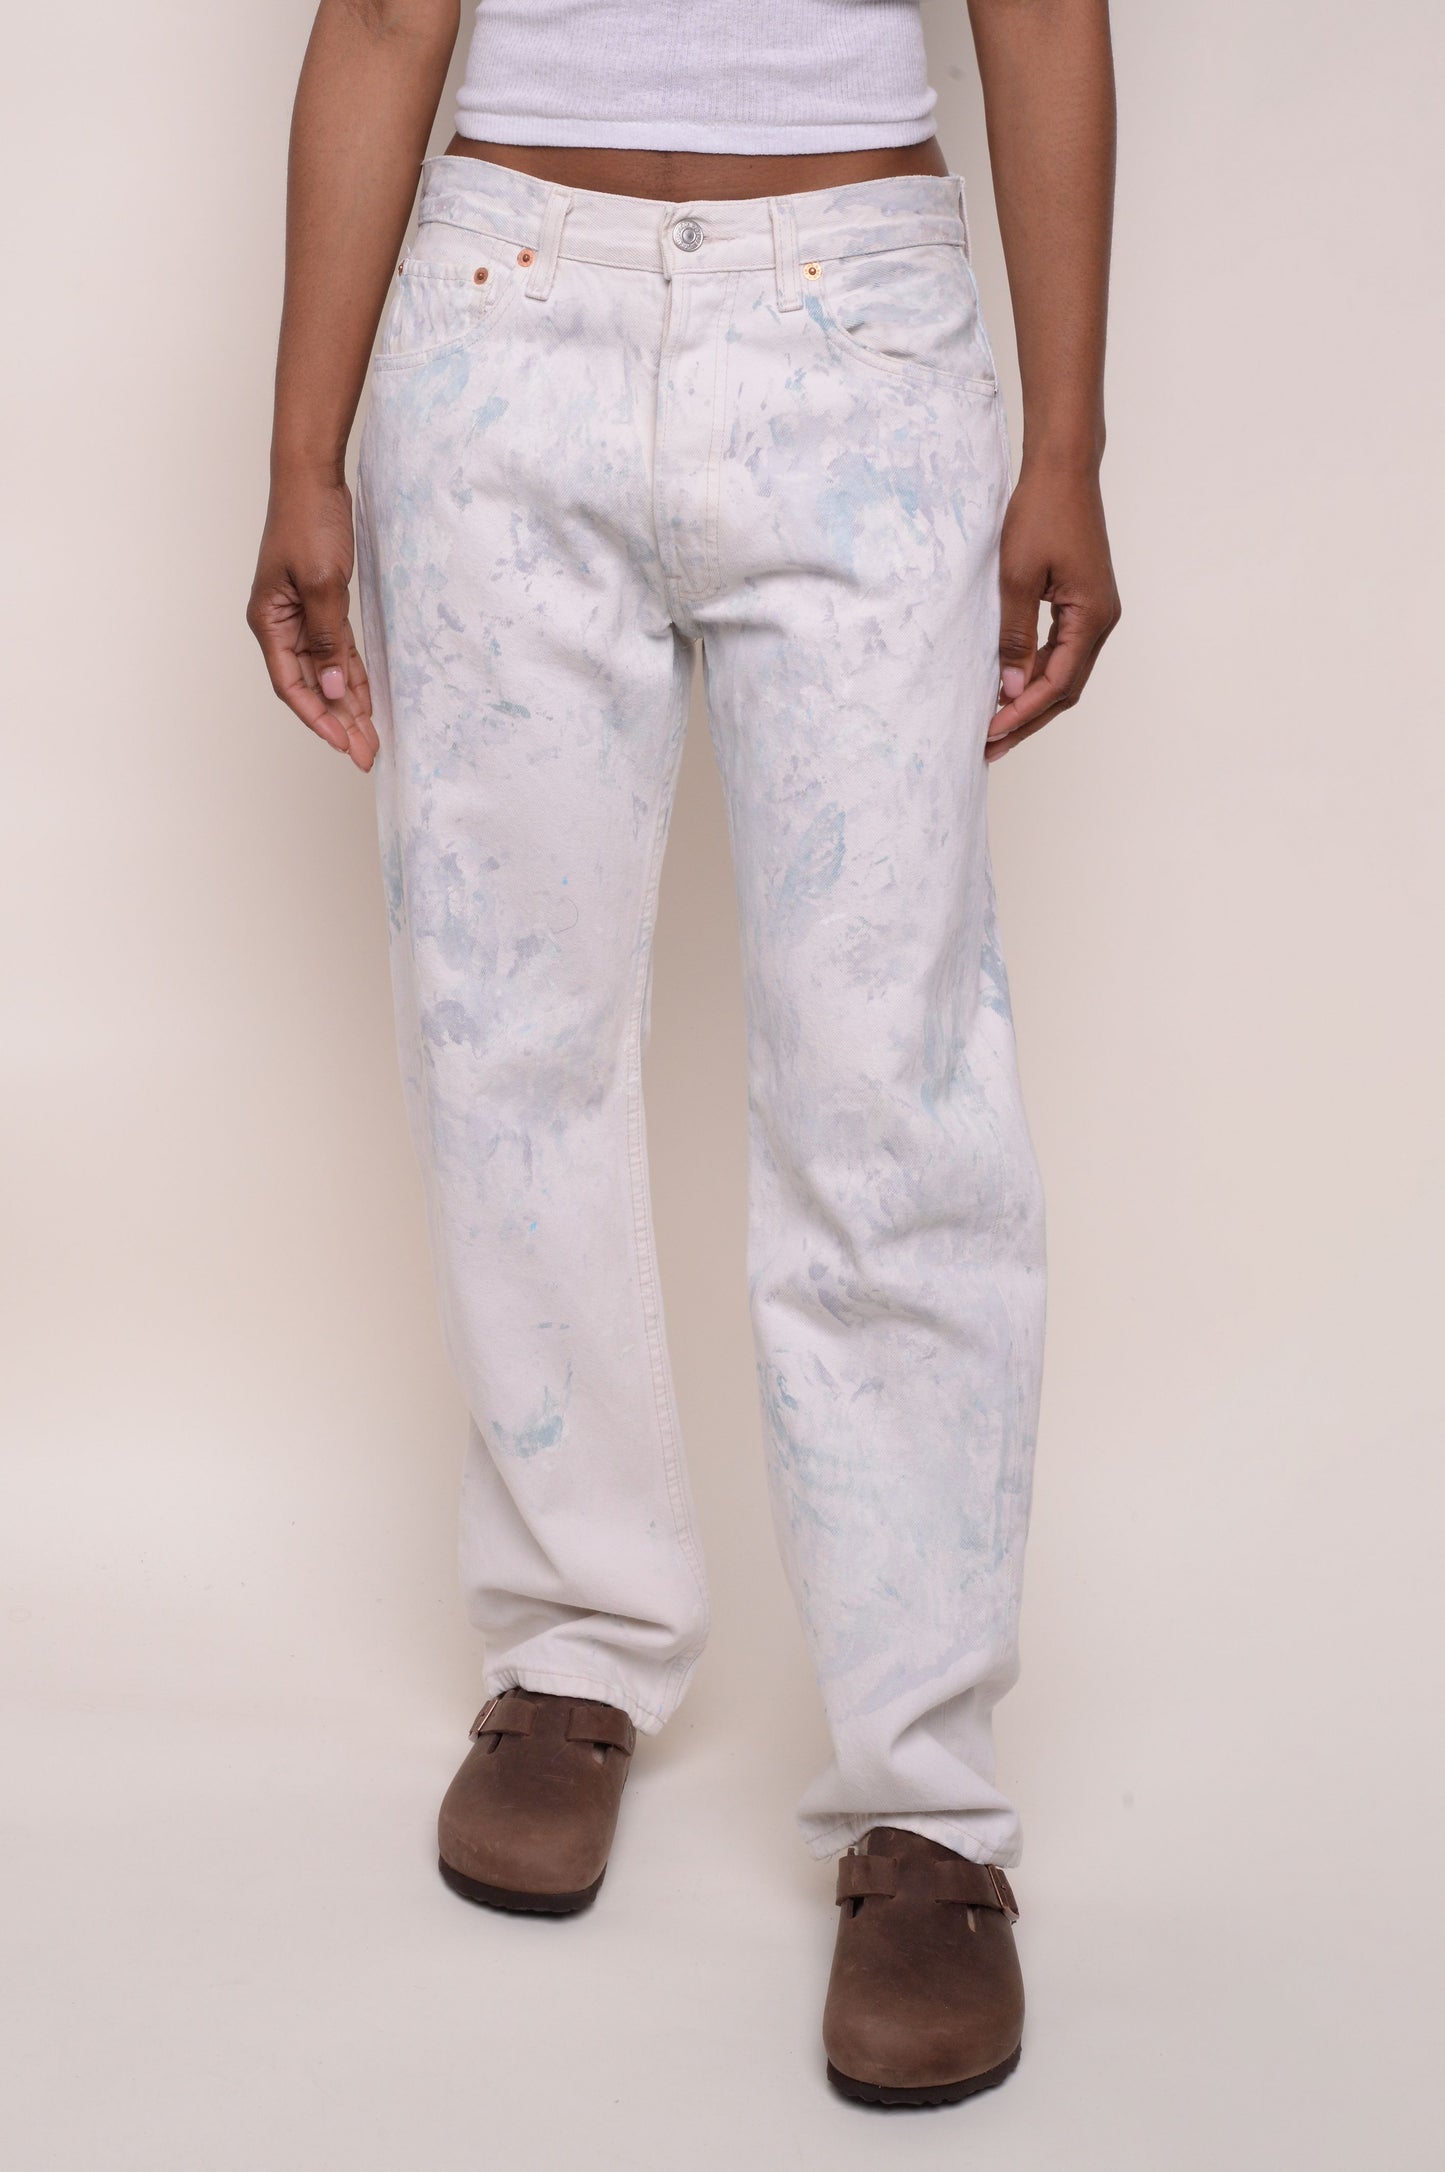 Levi's Straight 501 Painter's Jeans 31W x 30L